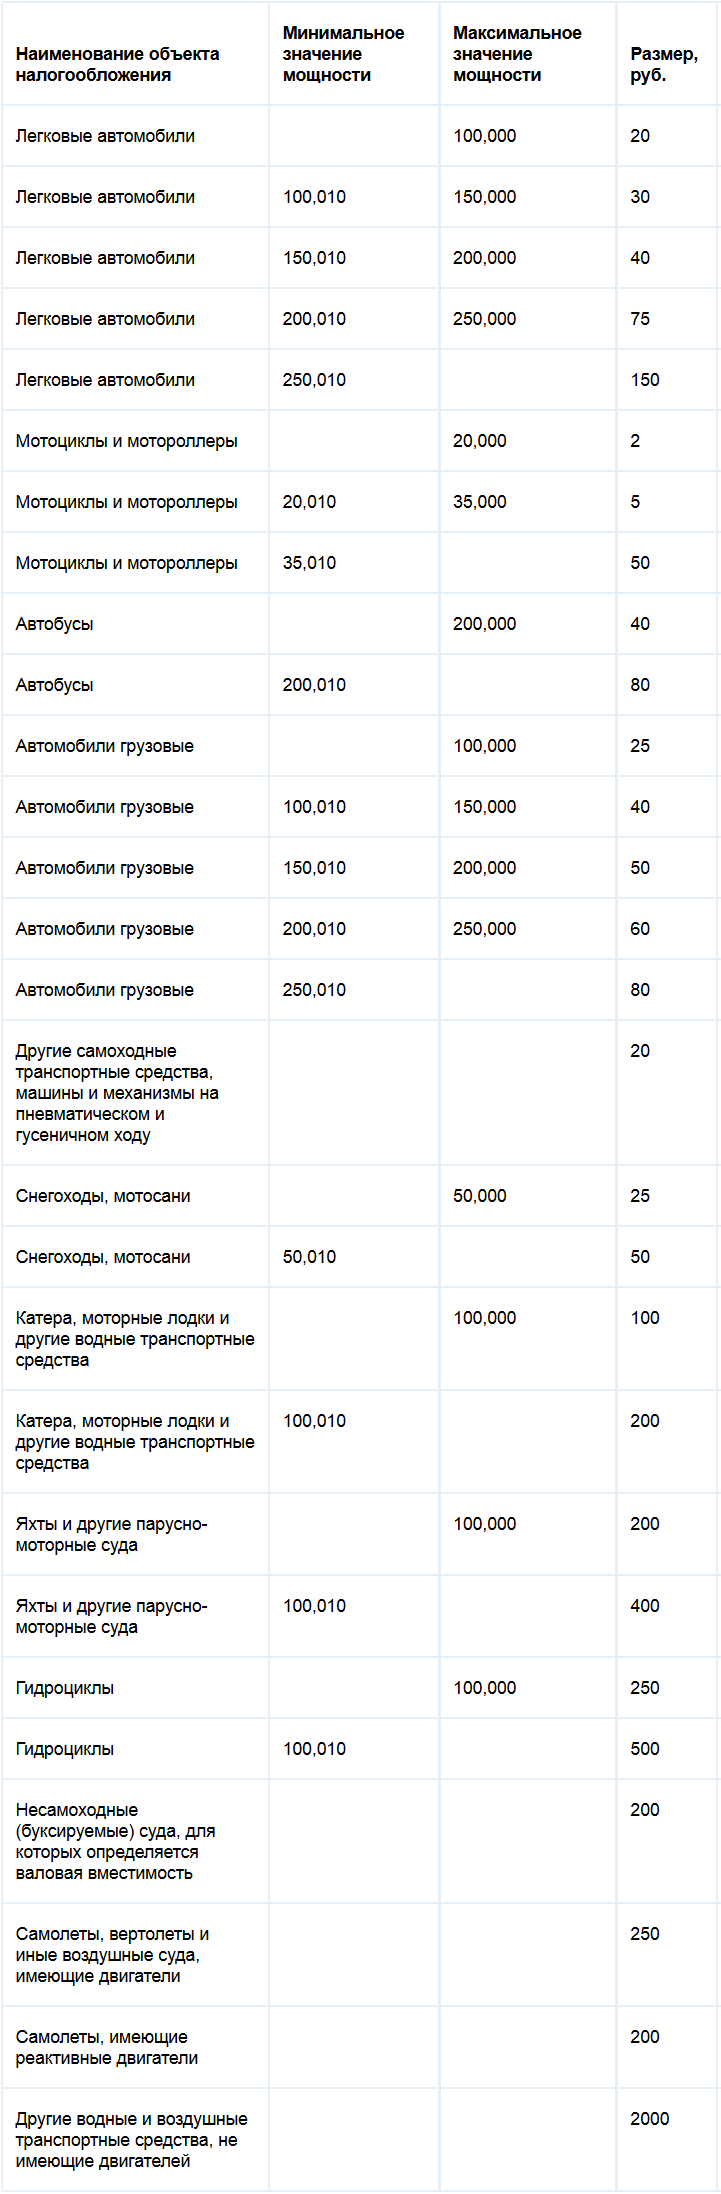 Ставки транспортного налога Владимирской области